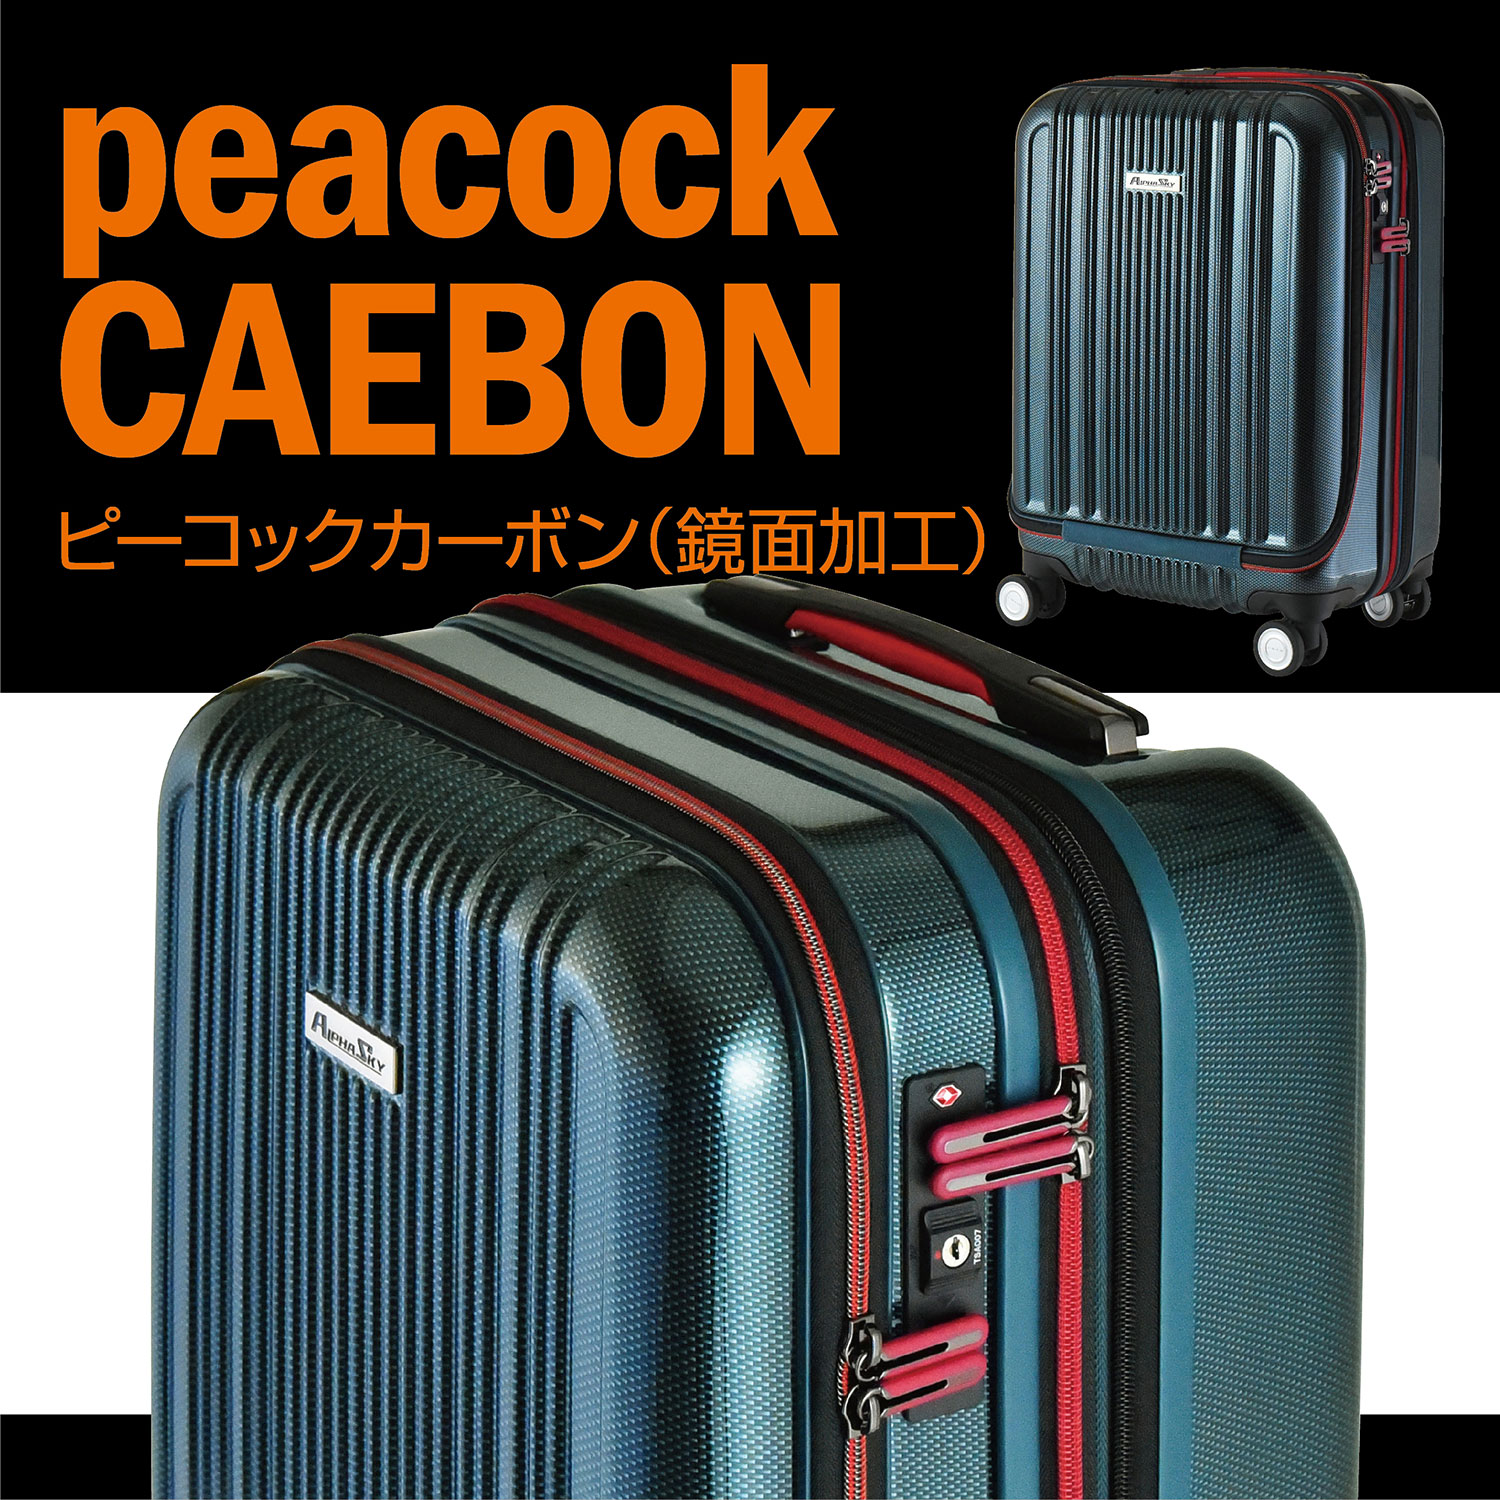 色: ブラックカーボン[アクタス] スーツケース 拡張フロントオープン